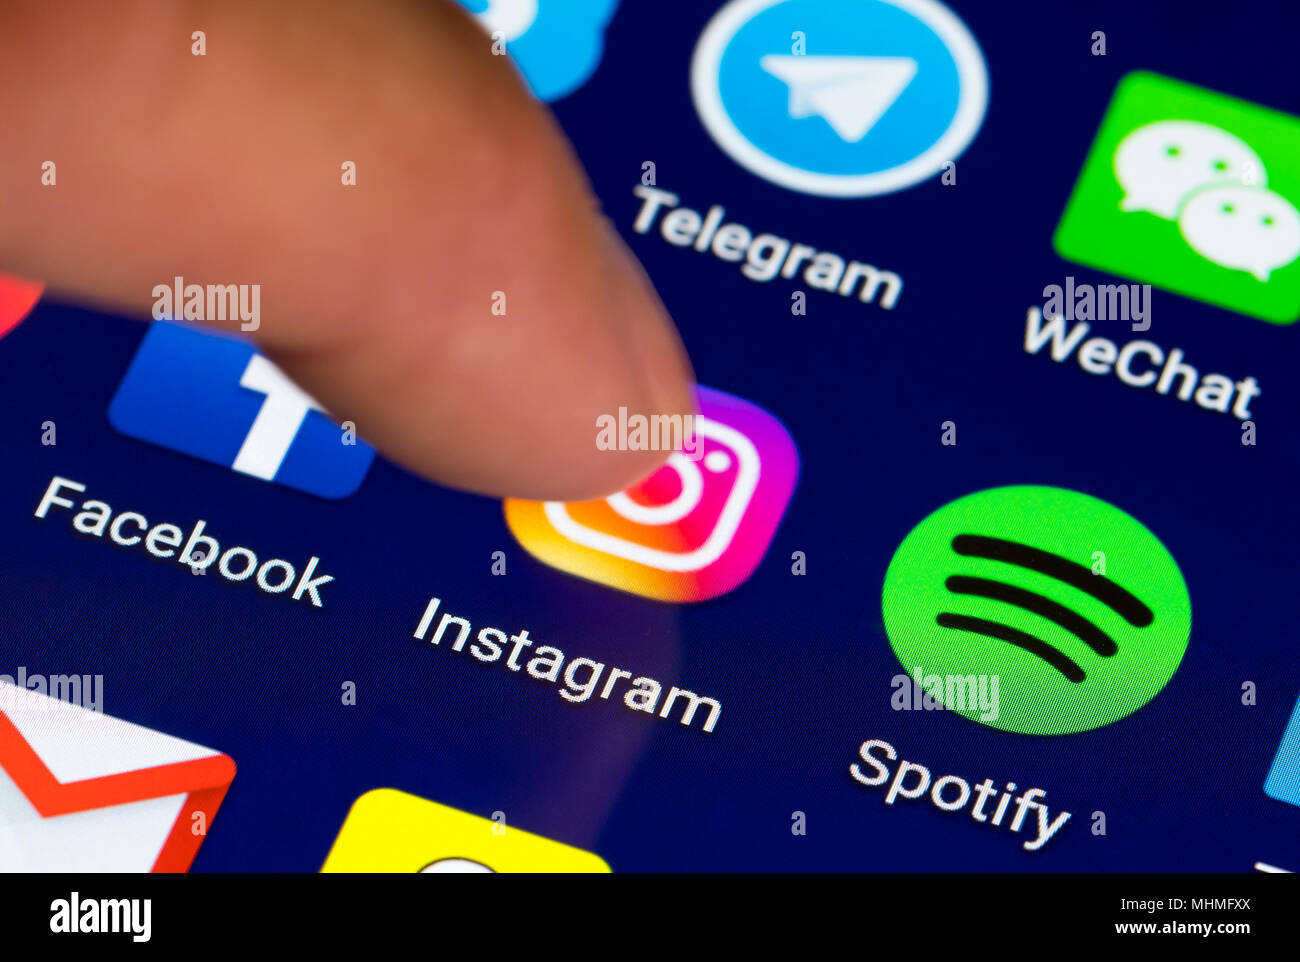 Finder en appuyant sur le raccourci de l'icône app Instagram sur une tablette ou smartphone écran d'affichage. Banque D'Images